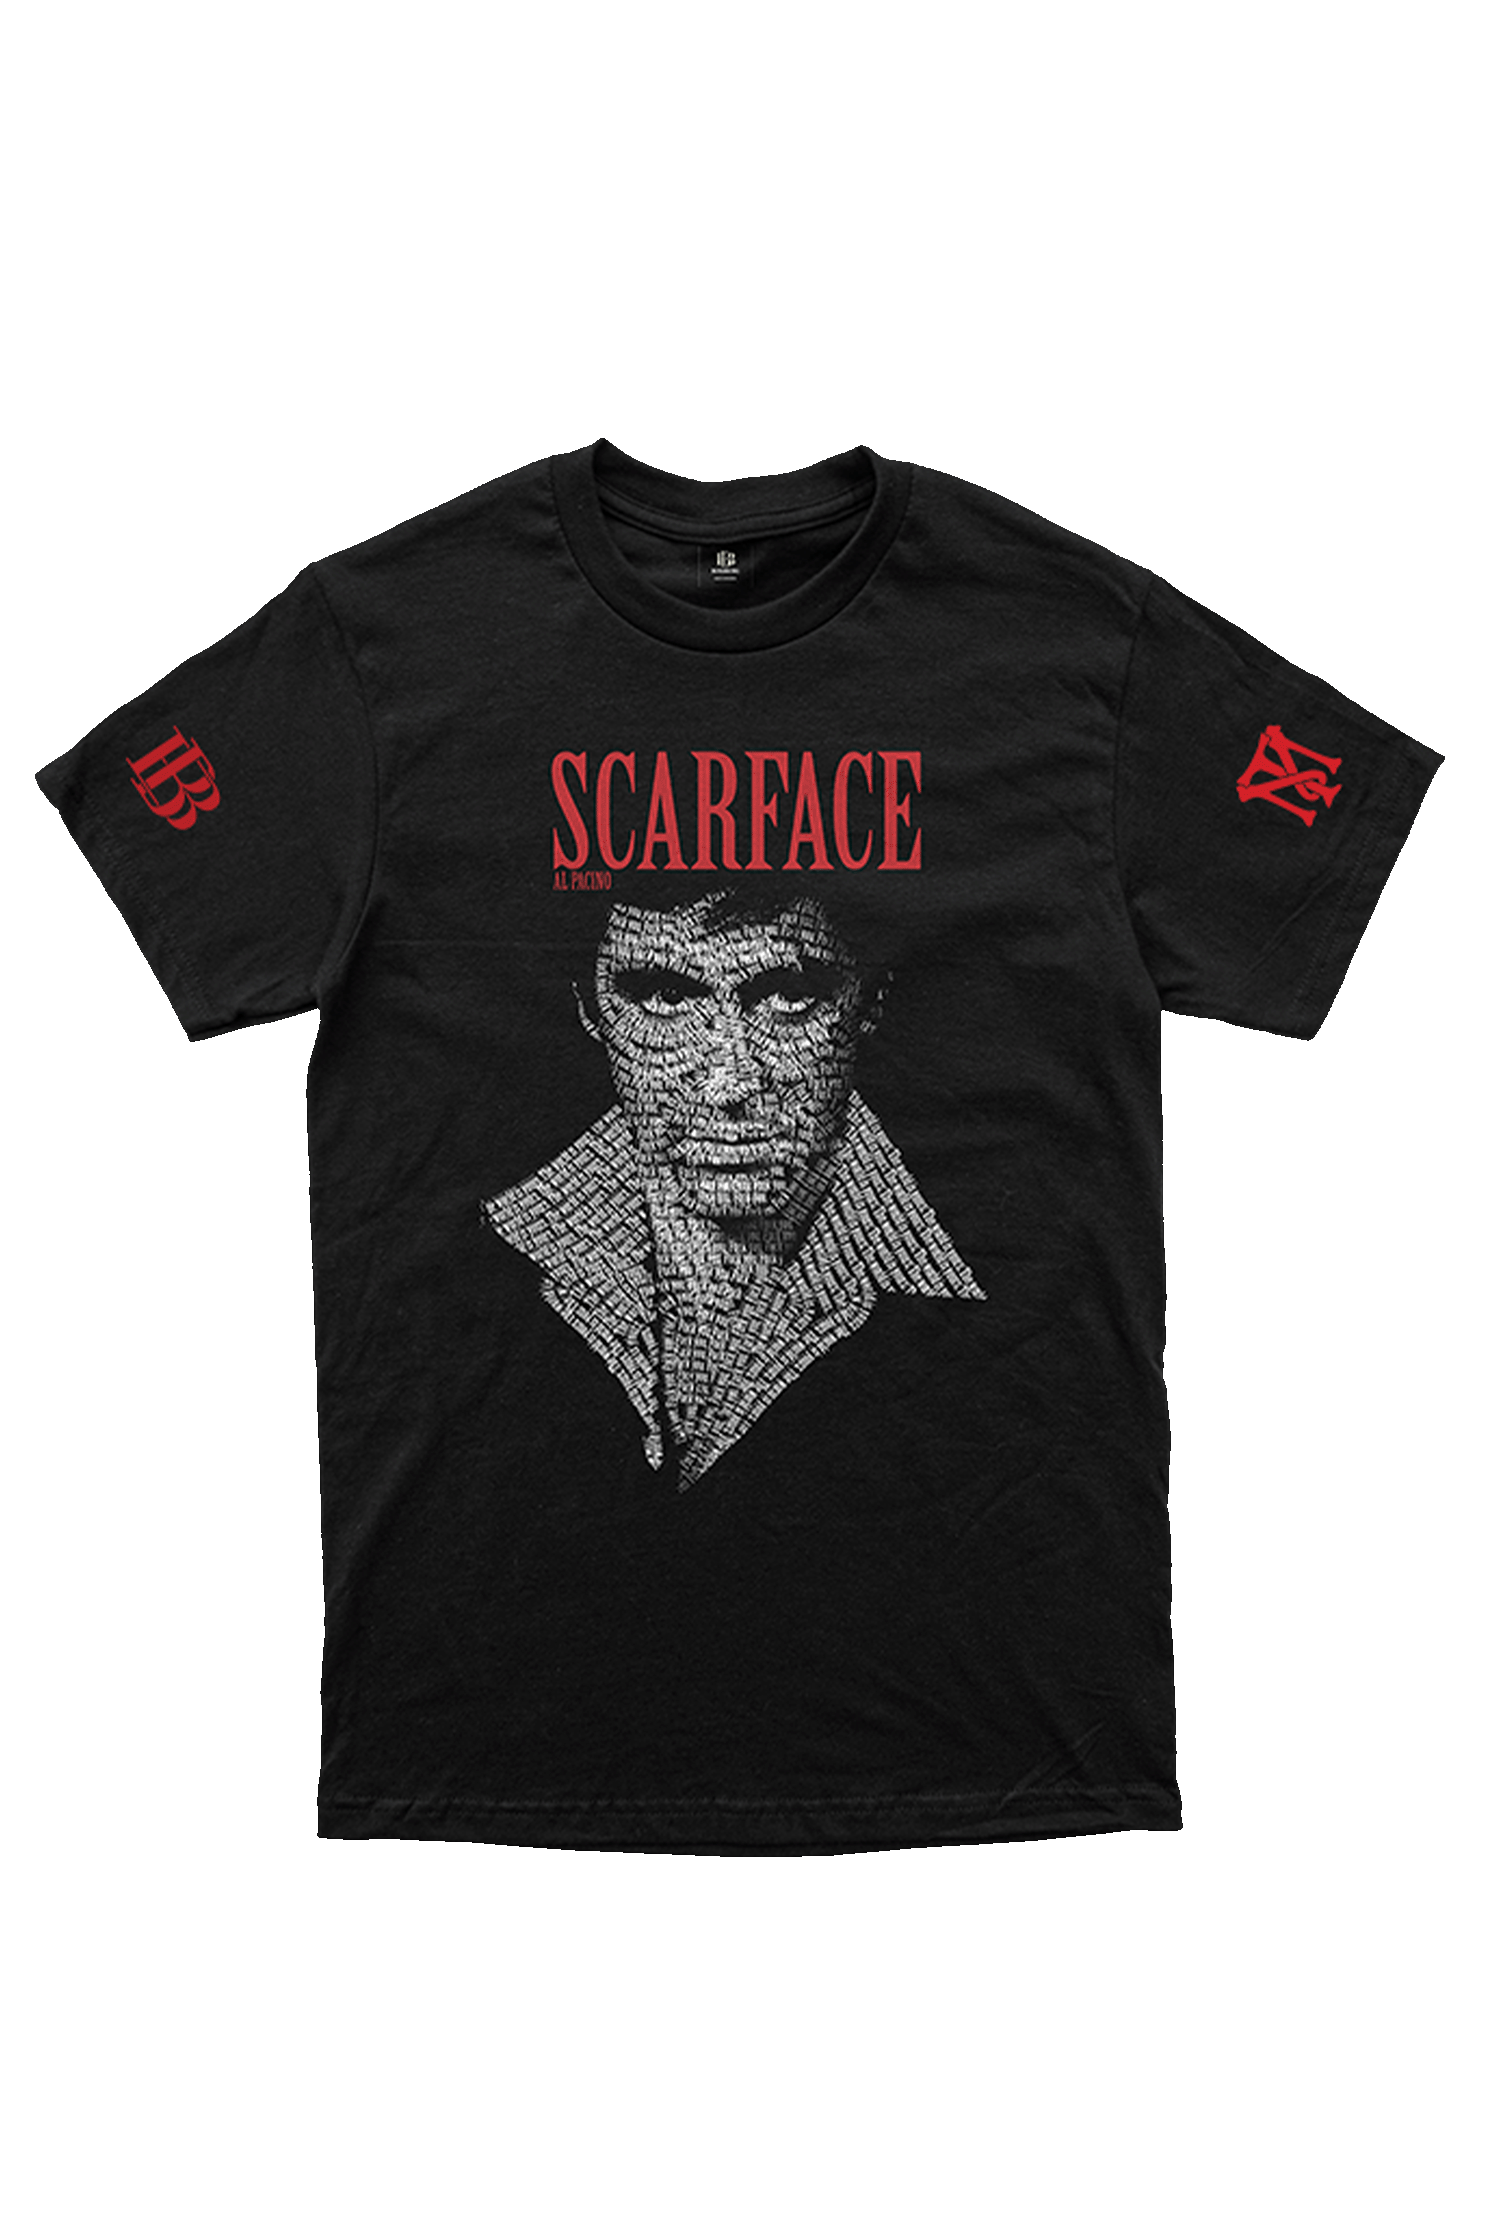 SCARFACE T-SHIRT